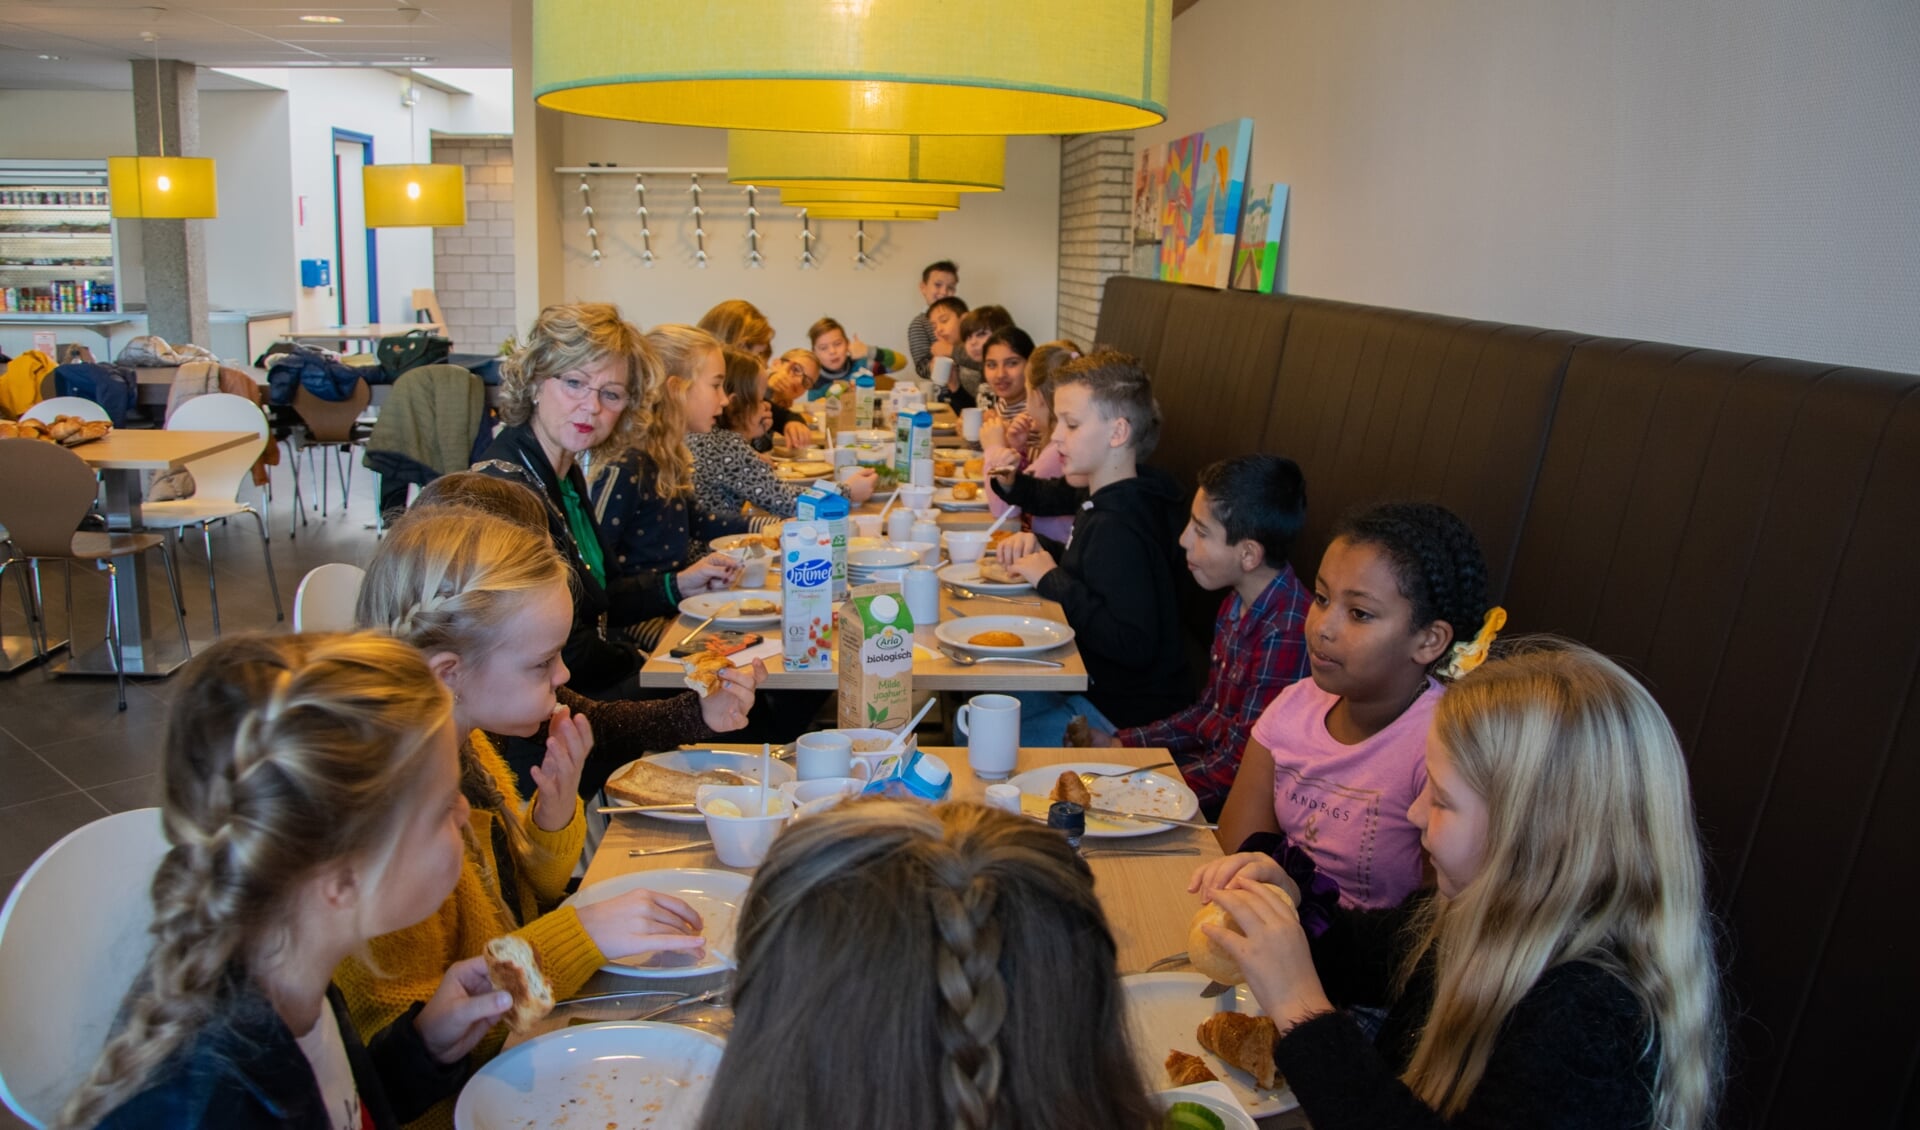 De burgemeester heeft de klas uitgenodigd om te komen eten in het gemeentehuis.  Foto: Sam Fish